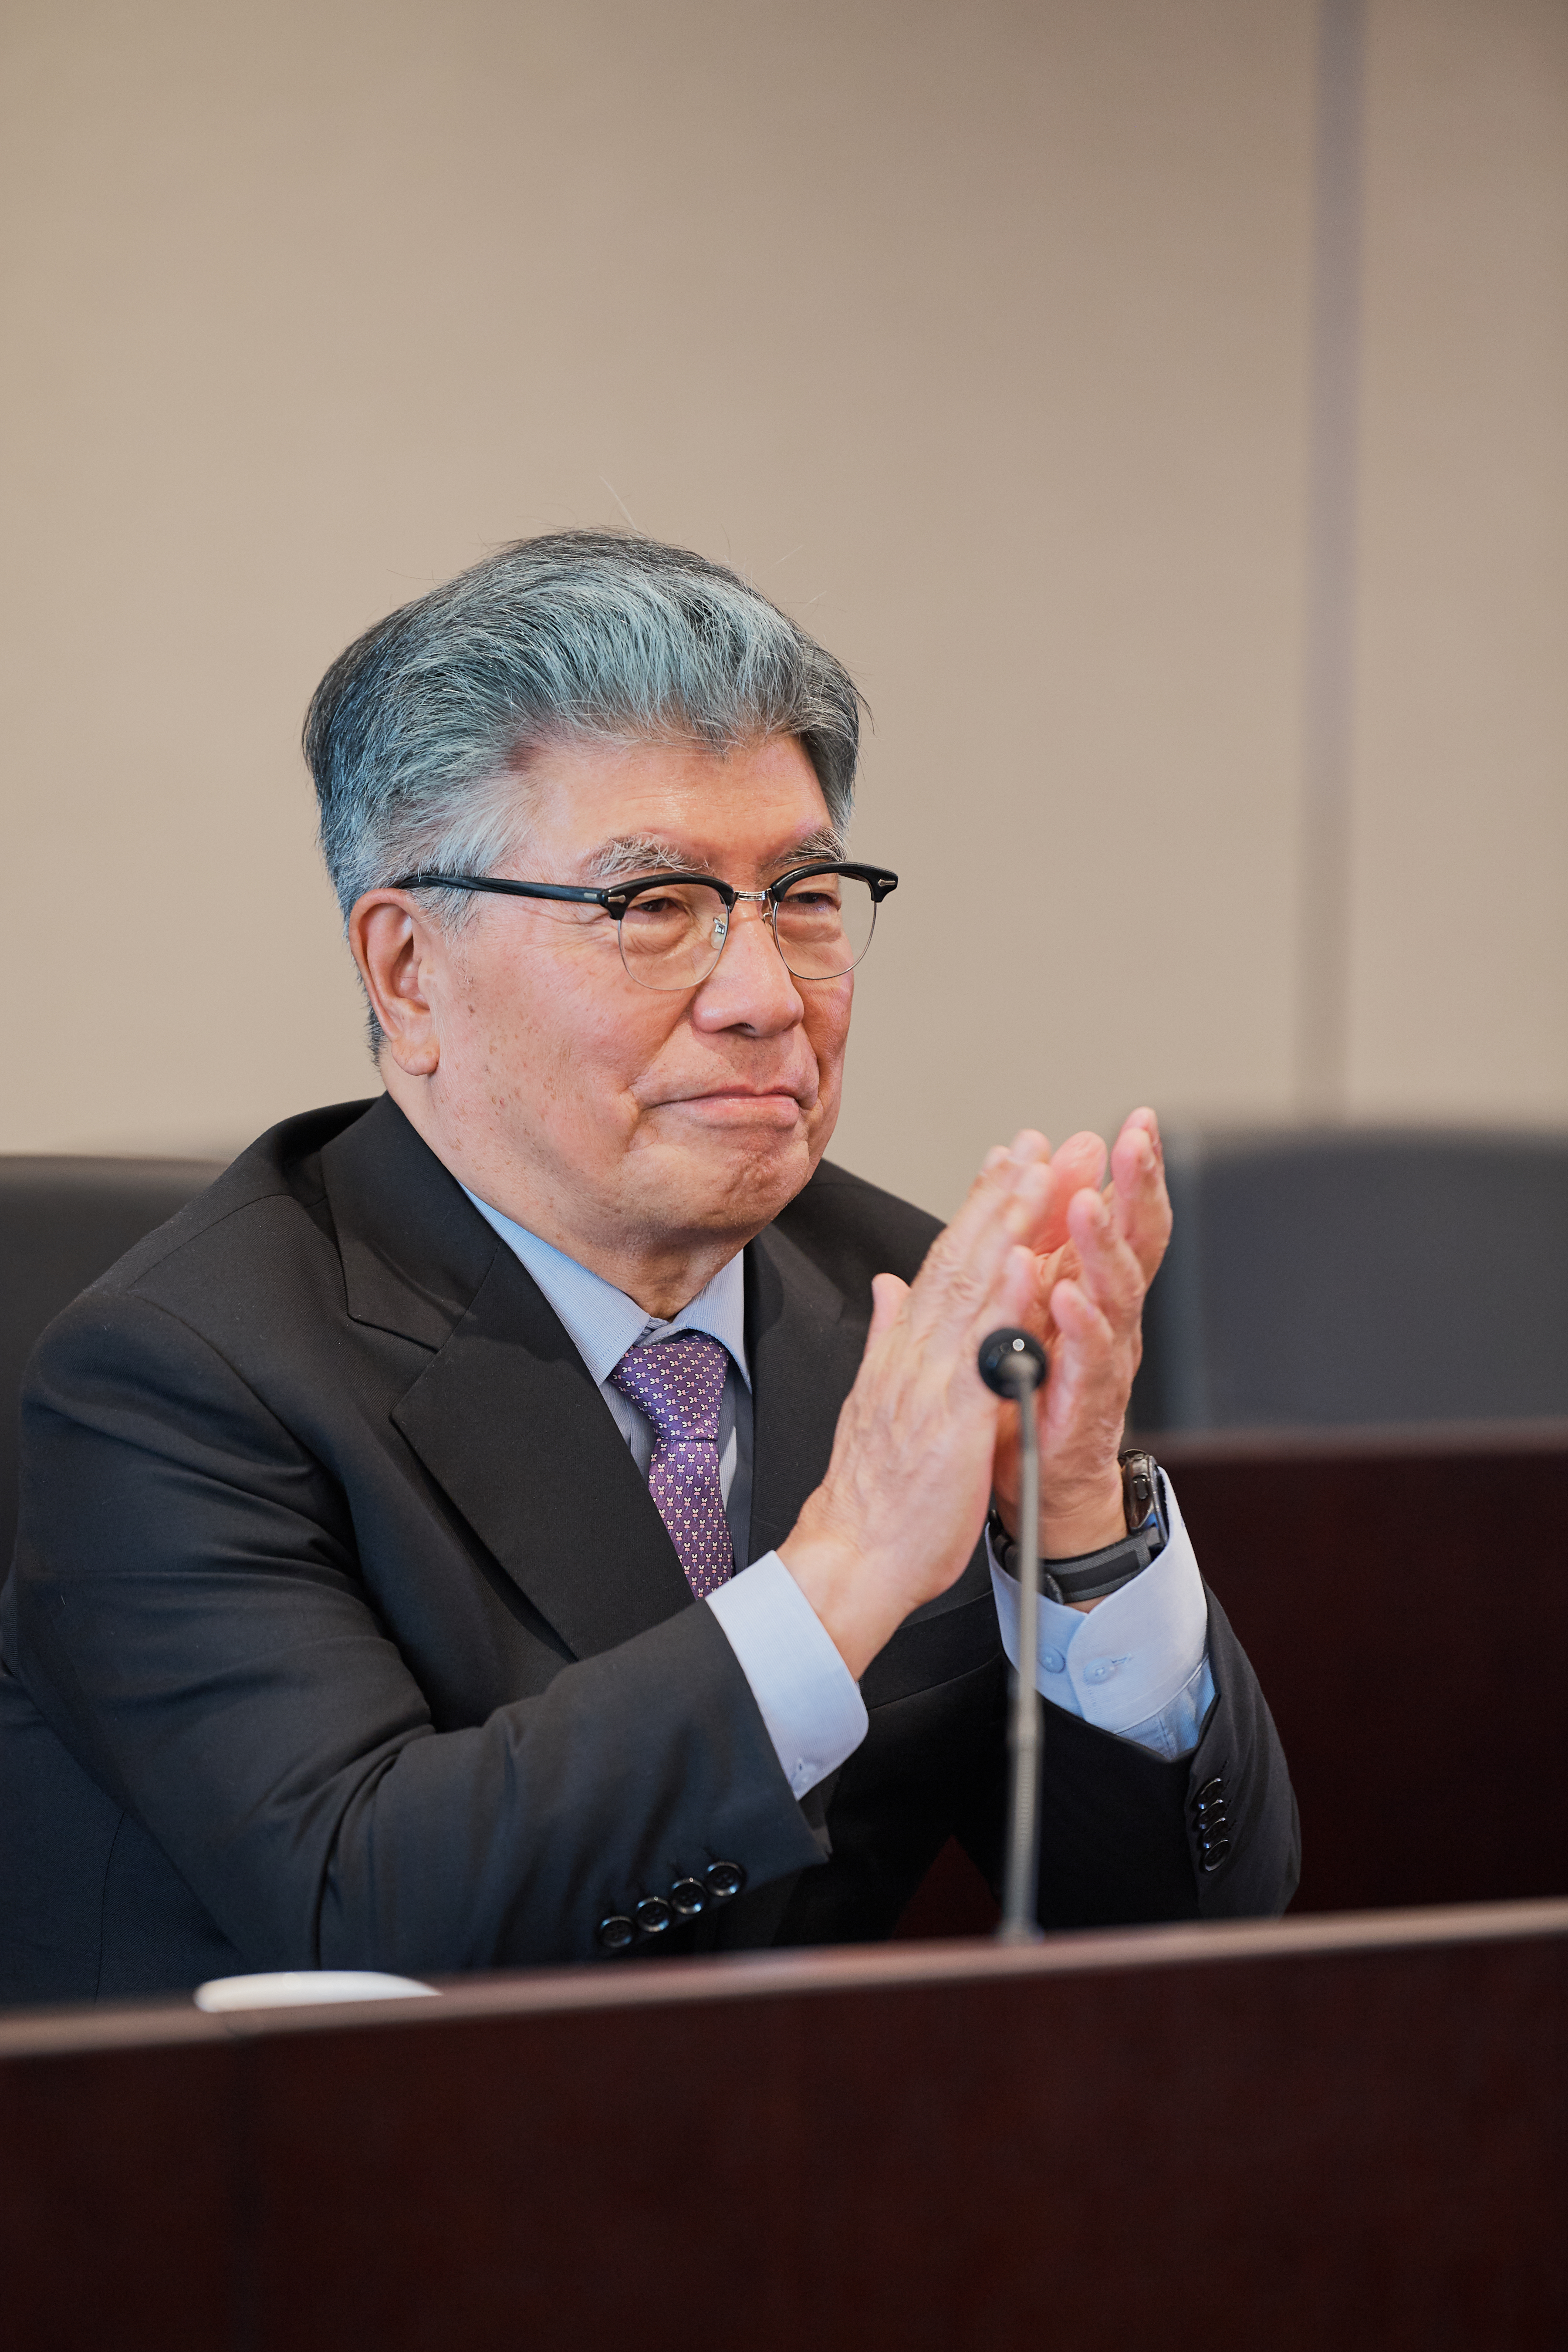 김중수 한림대학교 총장님